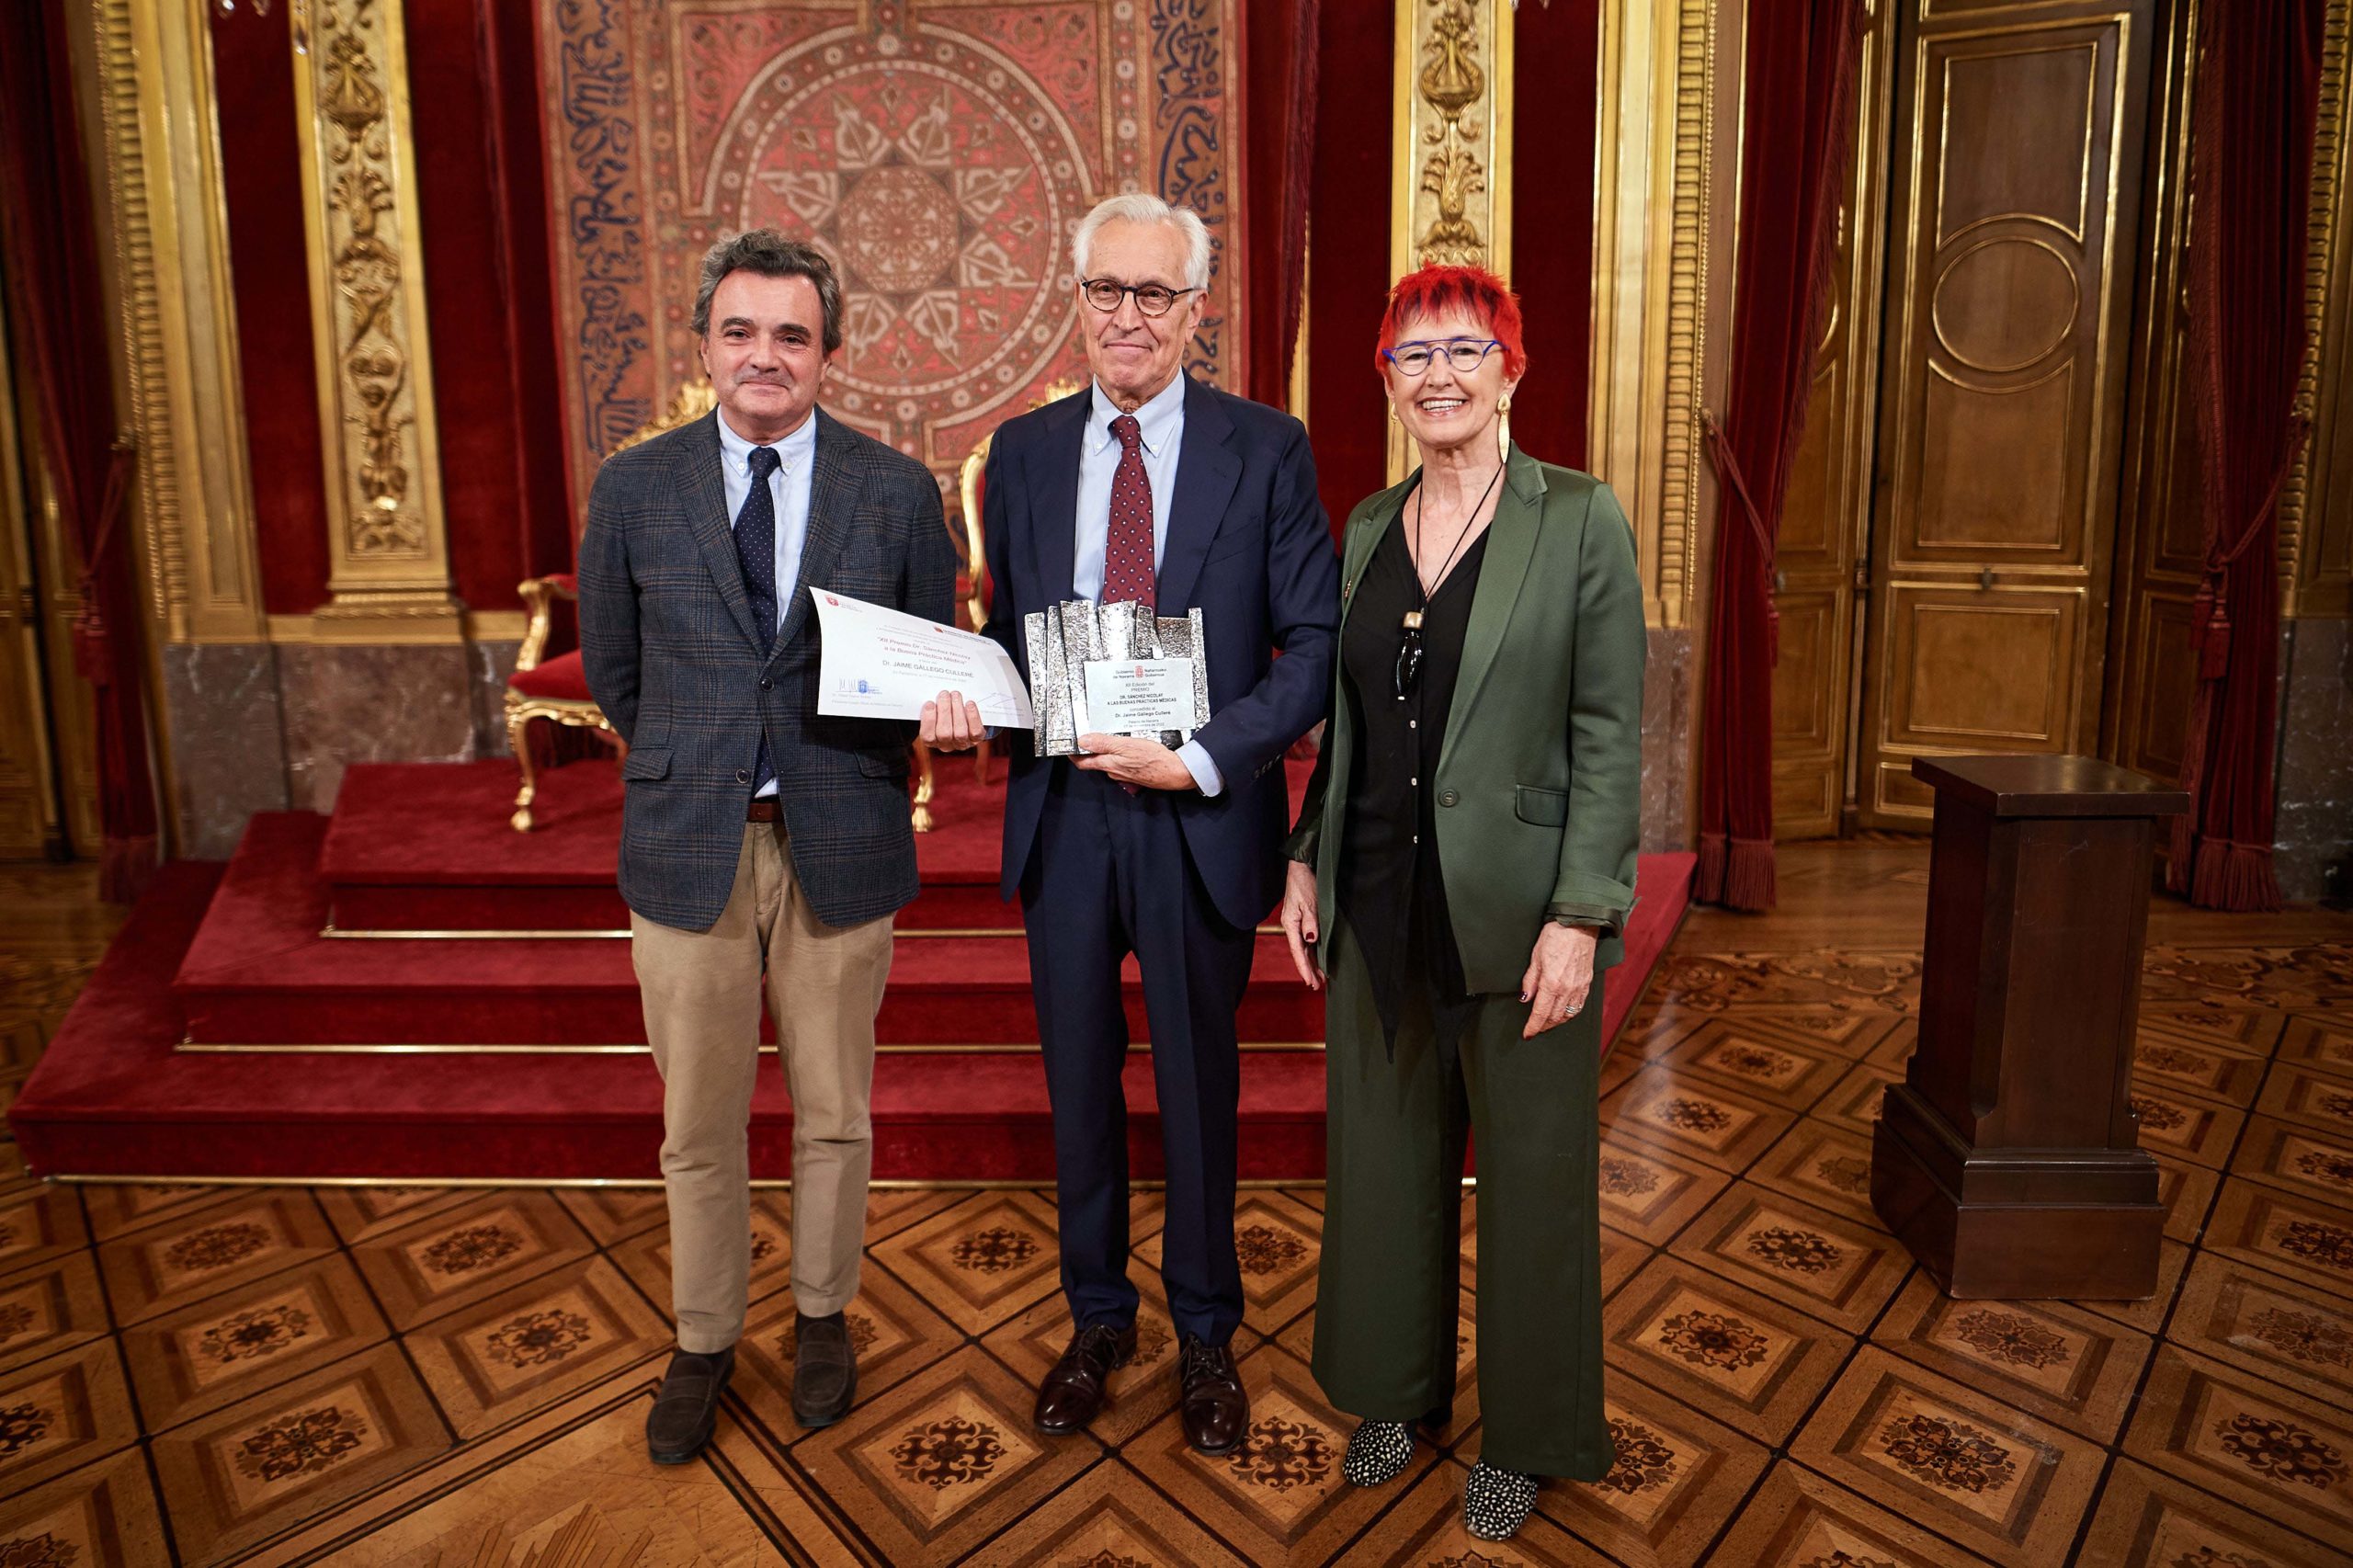 El neurólogo Jaime Gállego recibe el XII Premio Sánchez Nicolay a las Buenas Prácticas Médicas.